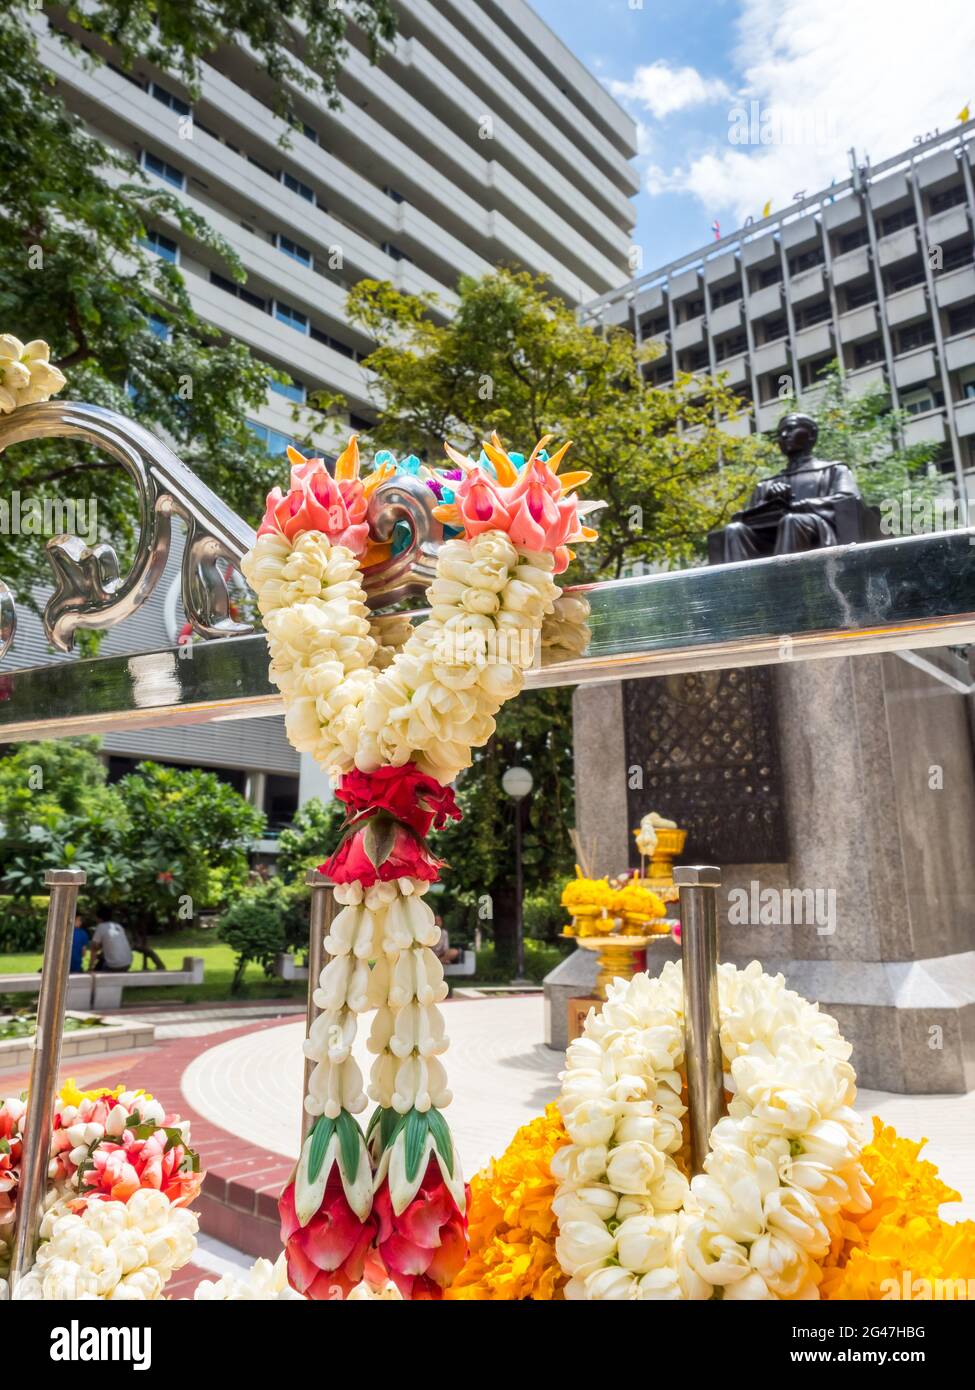 BANGKOK - 9 AGOSTO: La statua commemorativa del principe Songkhla al centro dell'ospedale Siriraj, Bangkok, Thailandia, sotto il cielo blu nuvoloso, è stata presa il 9 agosto 20 Foto Stock